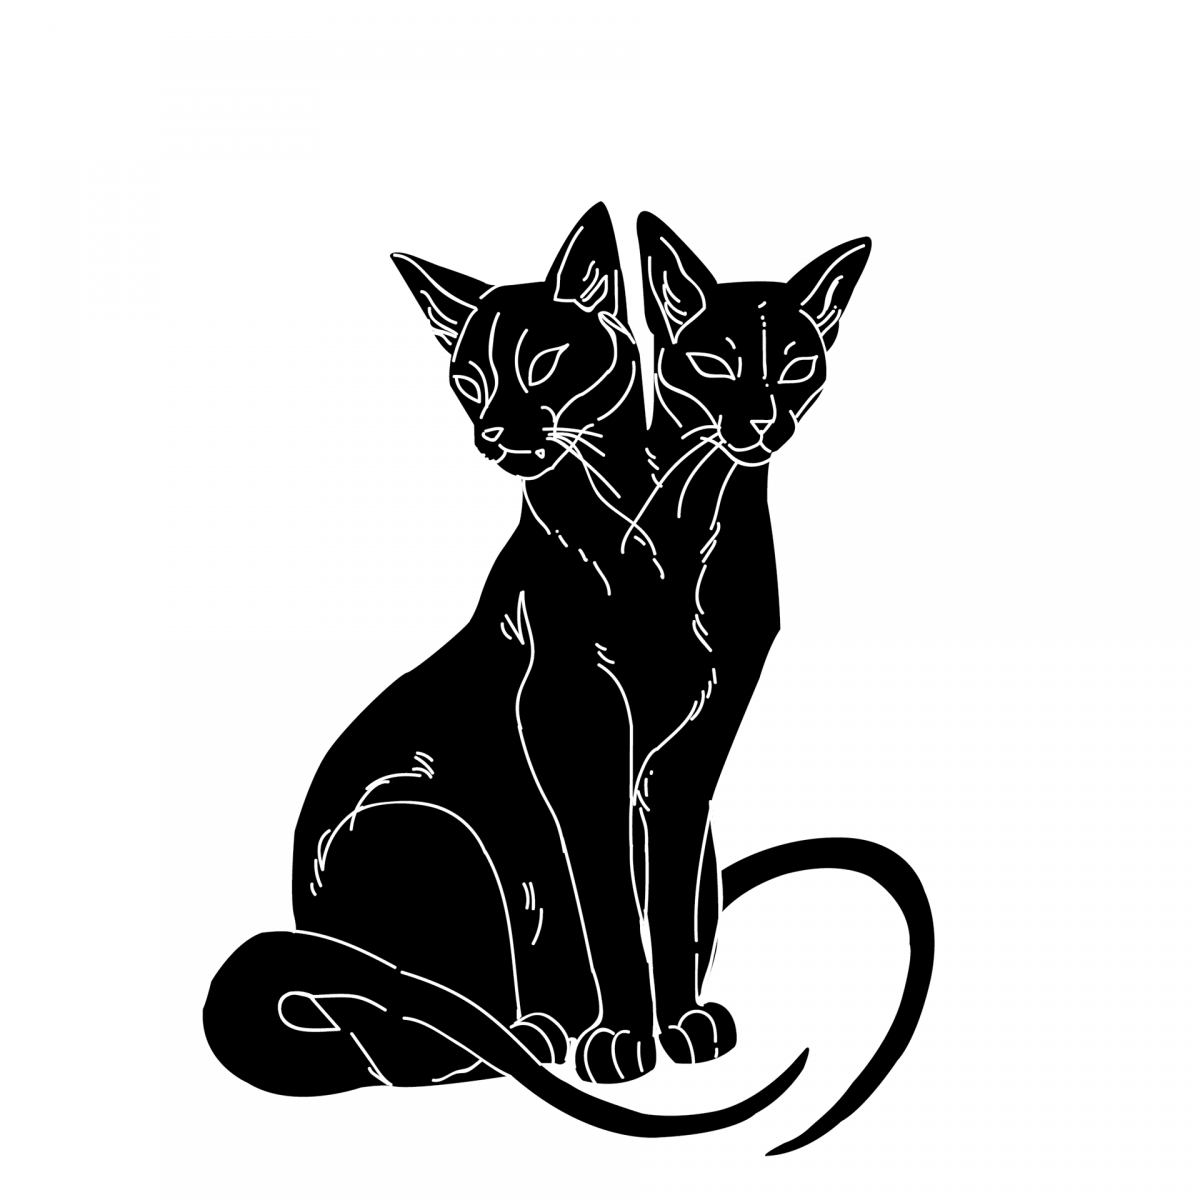 Таинственные контуры мощных черных кошек, обрамленных миражными отблесками света и теней